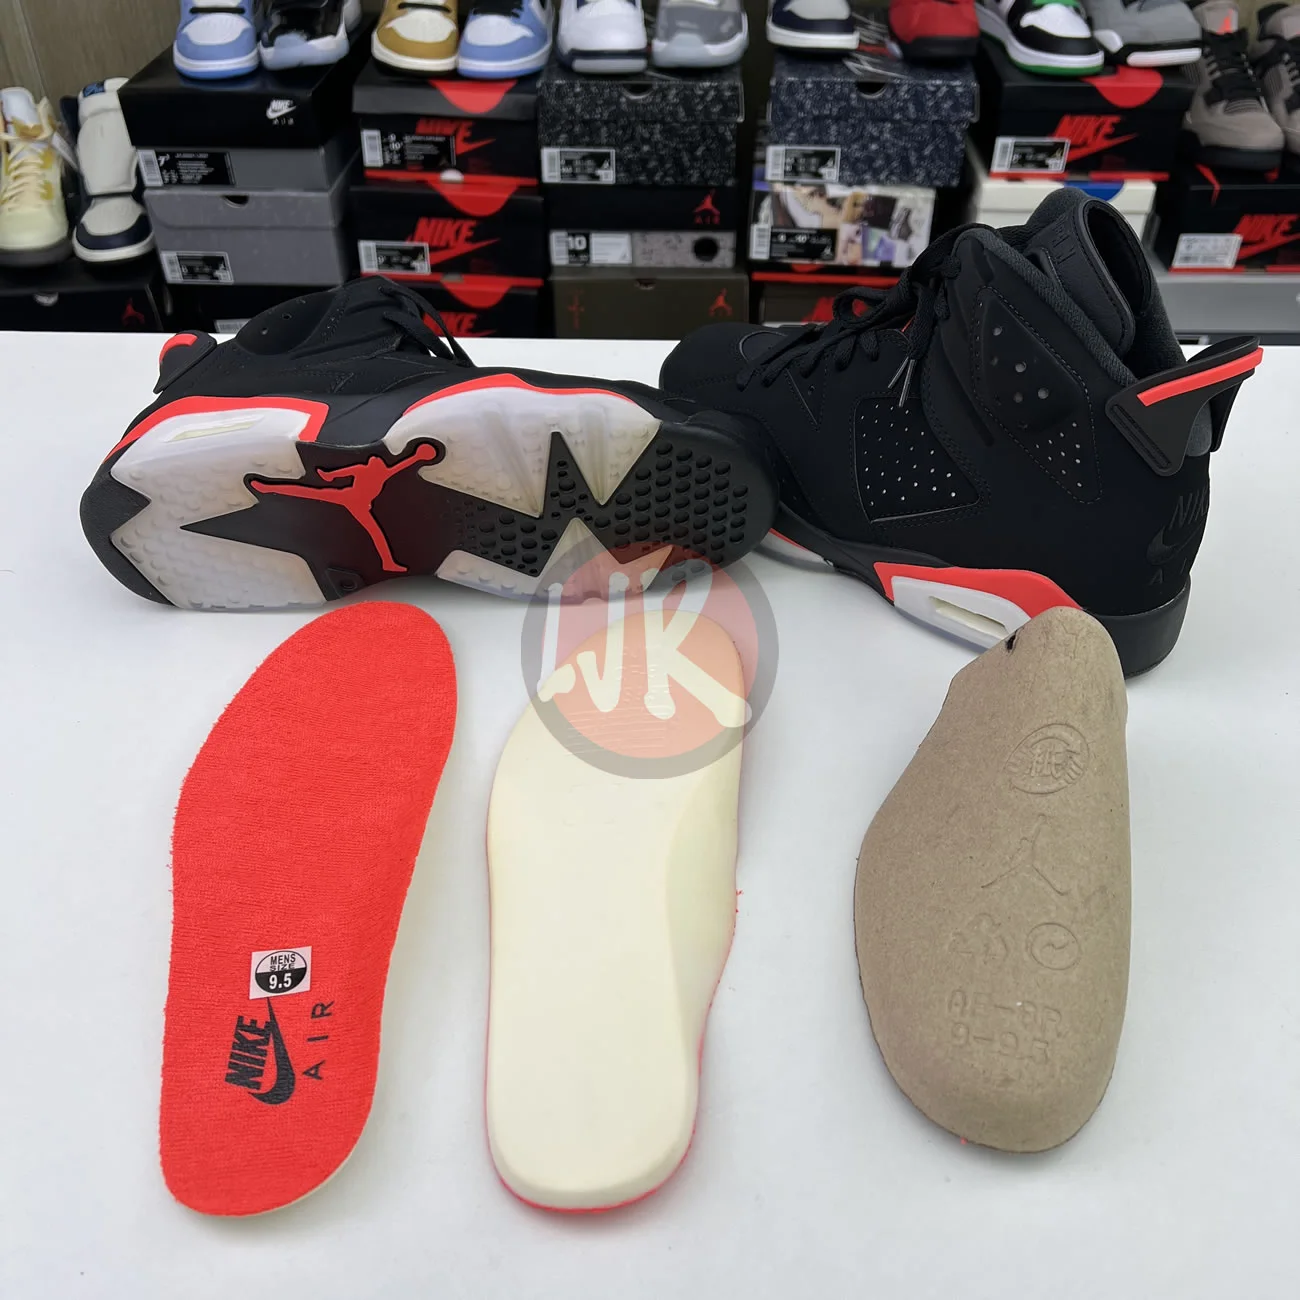 Air Jordan 6 Retro Black Infrared 2019 384664 060 Ljr Sneakers (11) - bc-ljr.com